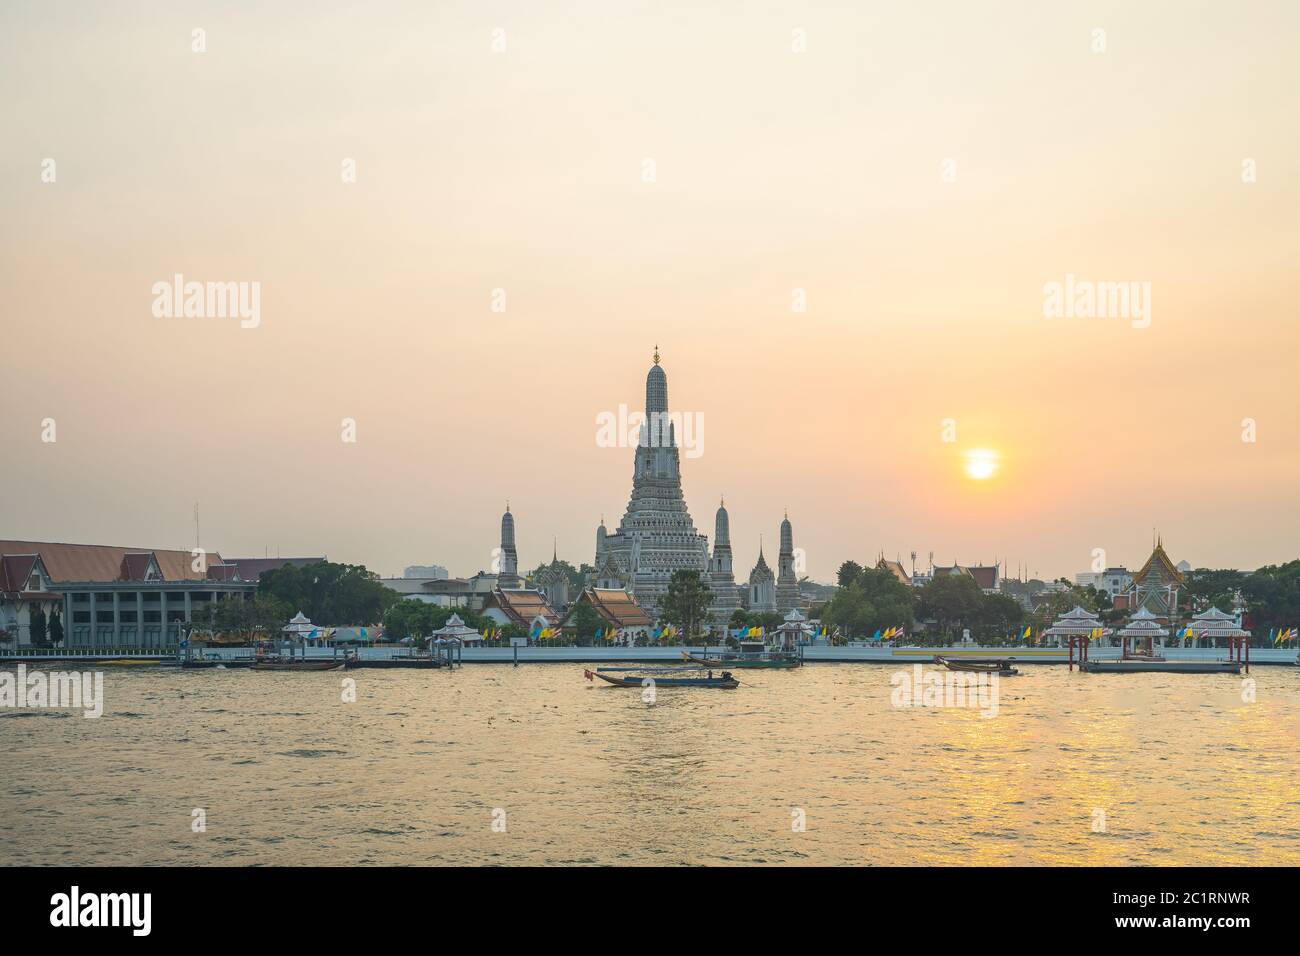 Bangkok Wat Arun temple with Chao Phraya River in Bangkok, Thailand Stock Photo